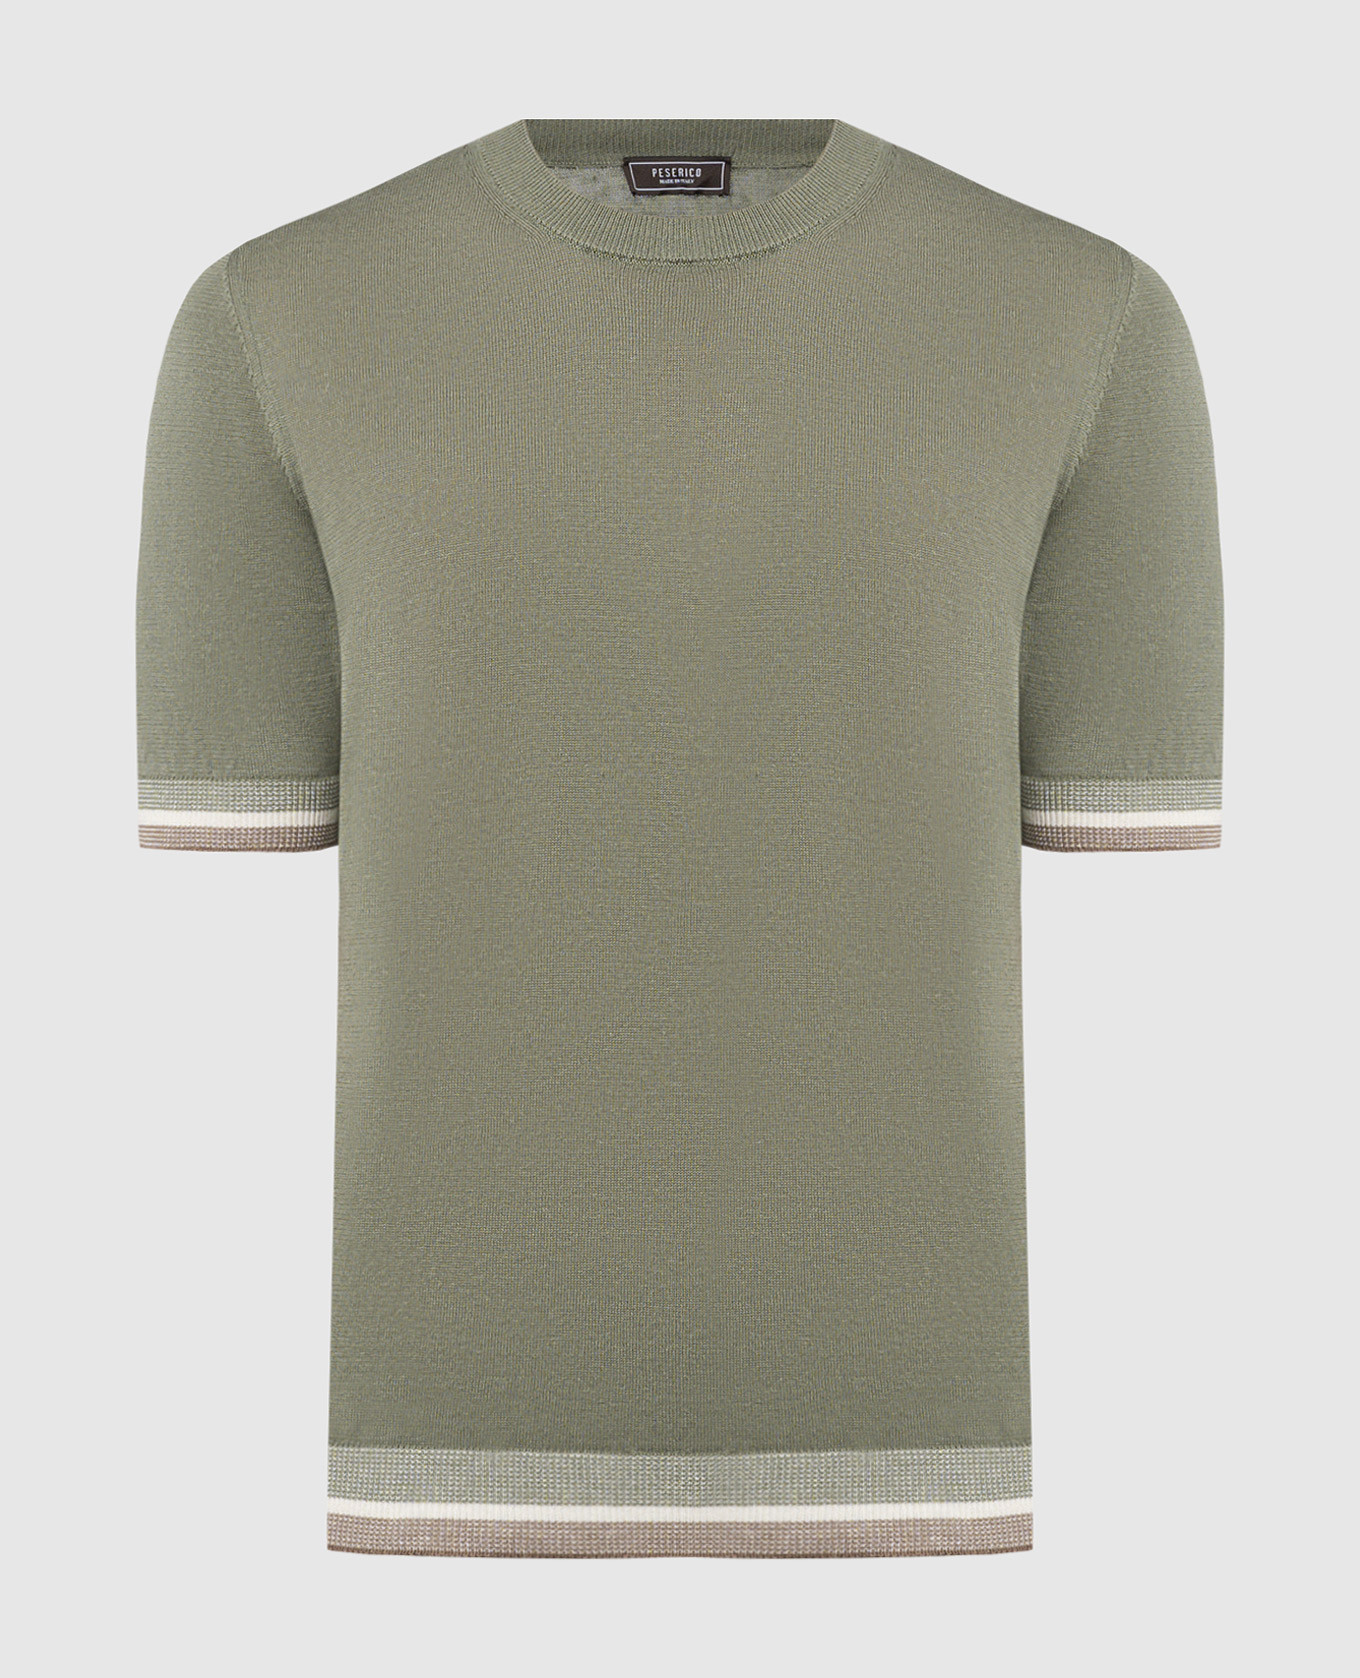 Green t-shirt with linen